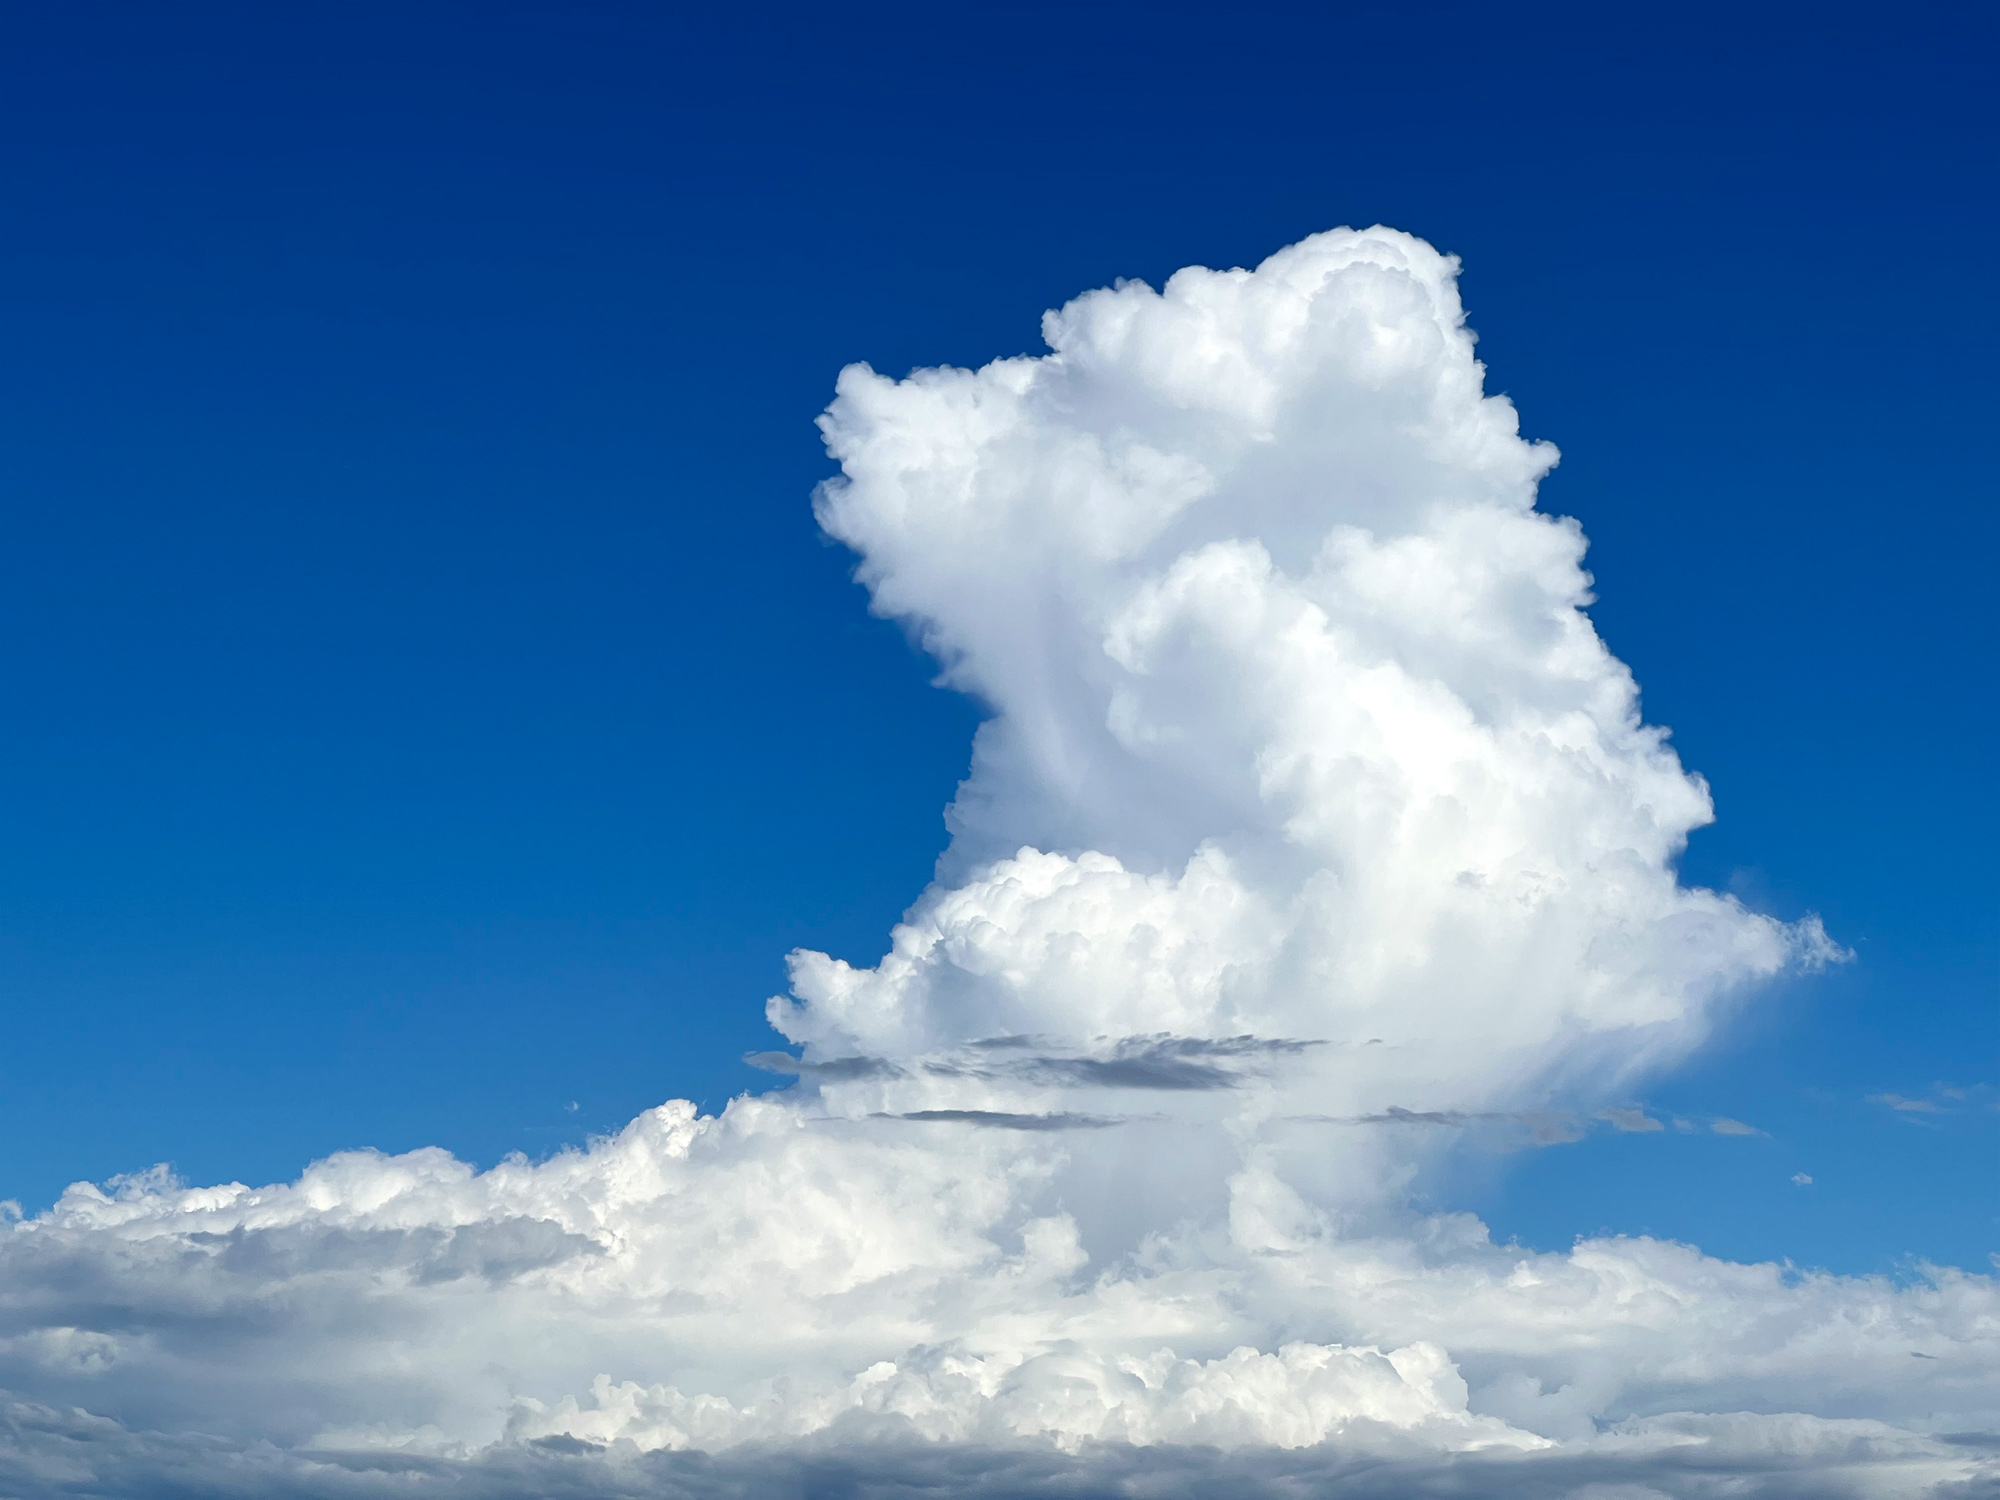 夏らしい入道雲の無料写真素材 フリー